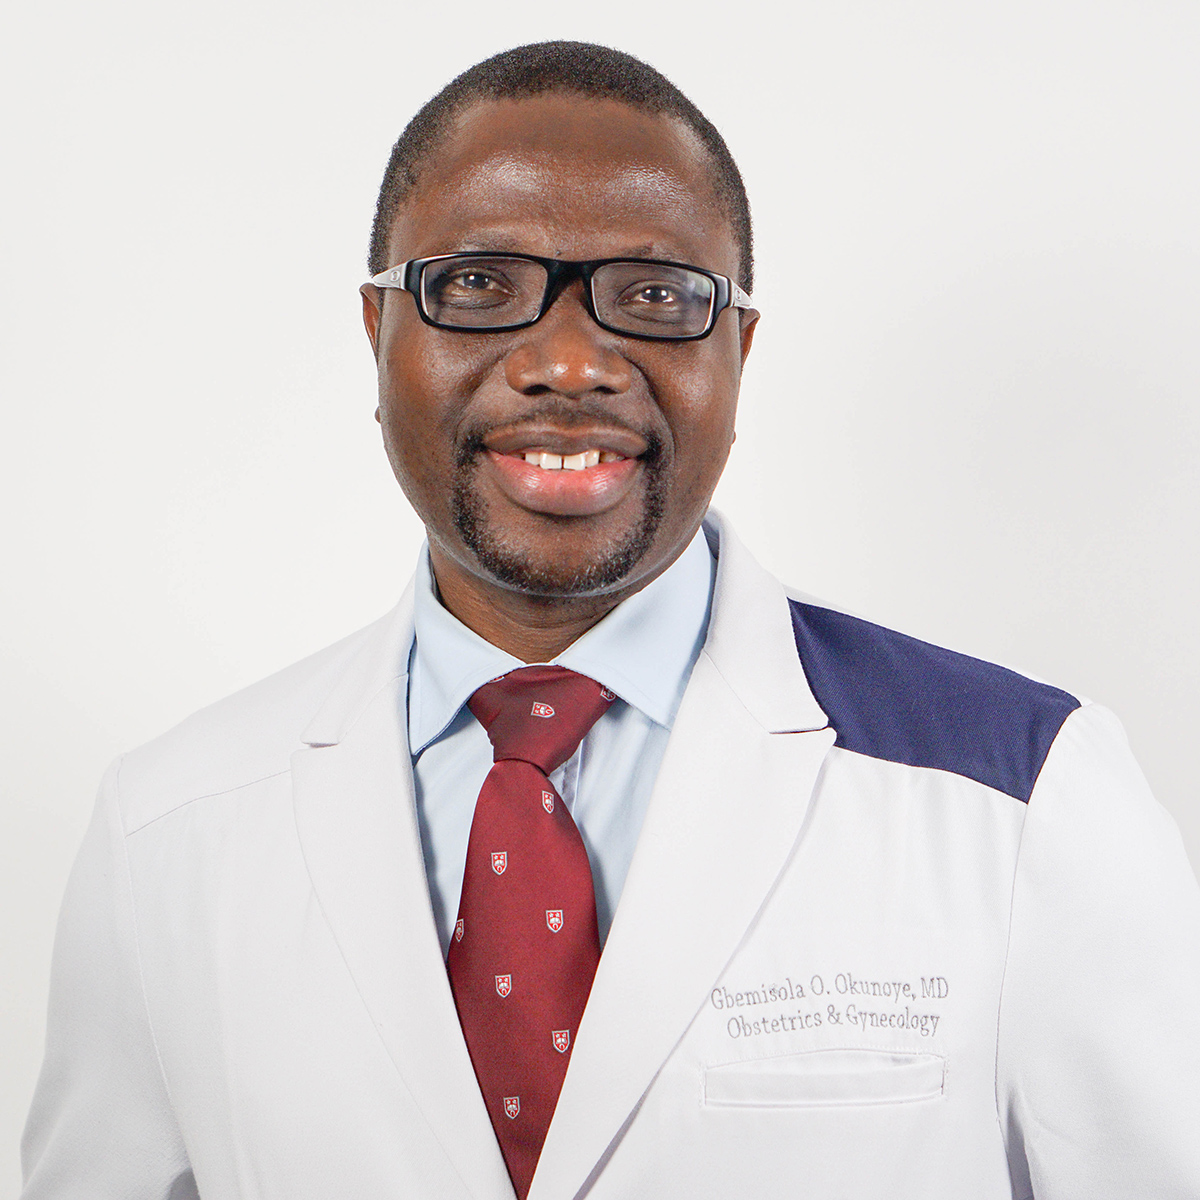 الدكتور غبيميسولا أوكونوي